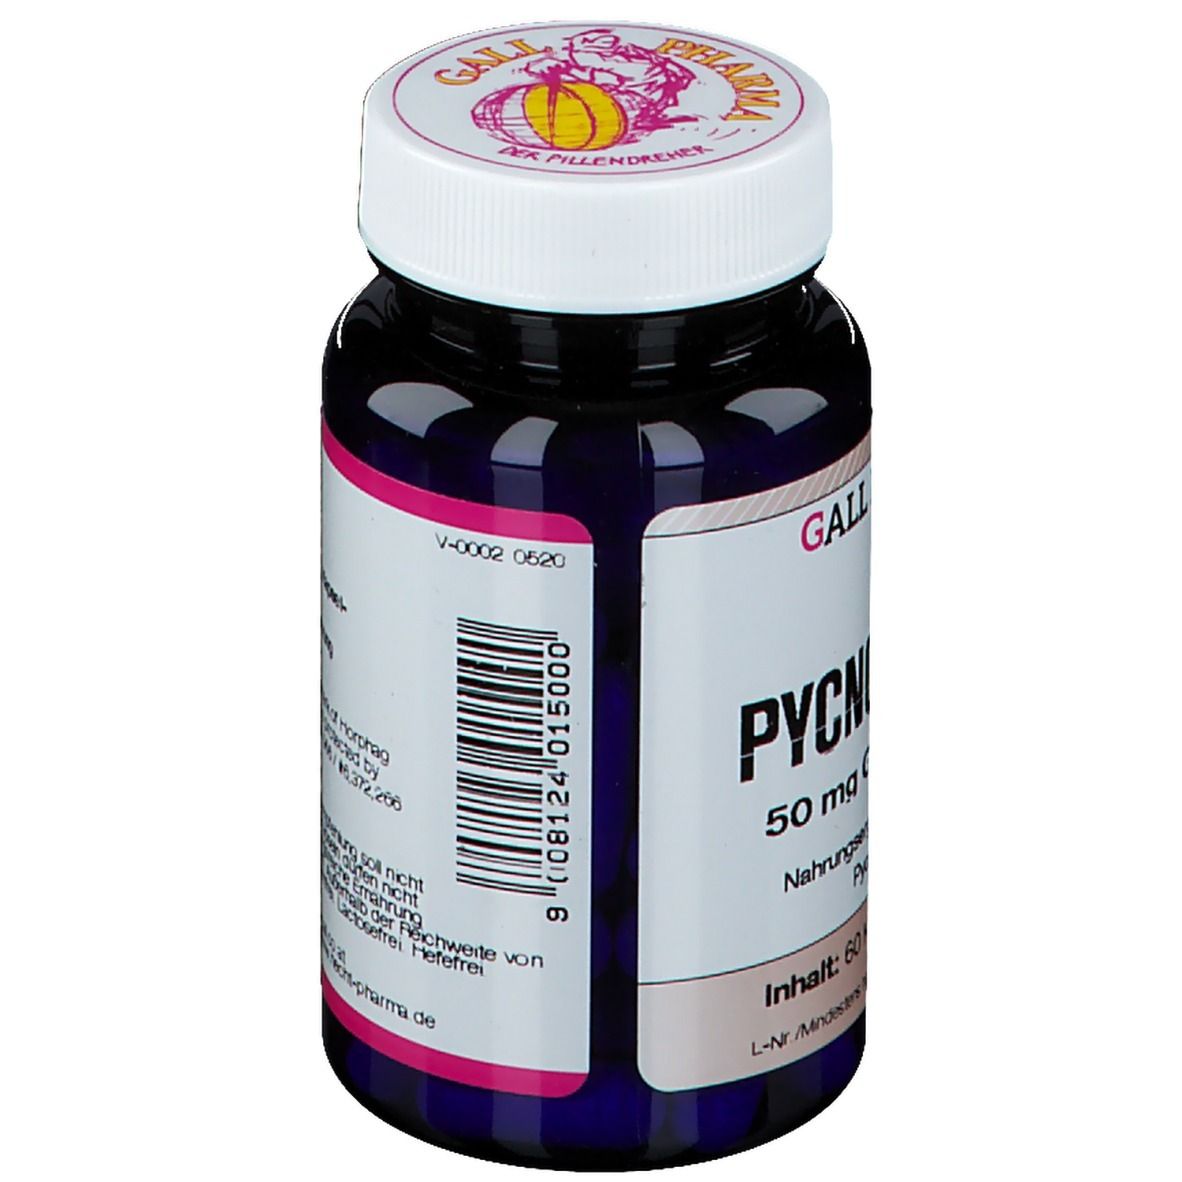 GALL PHARMA Pycnogenol® 50mg GPH Kapseln